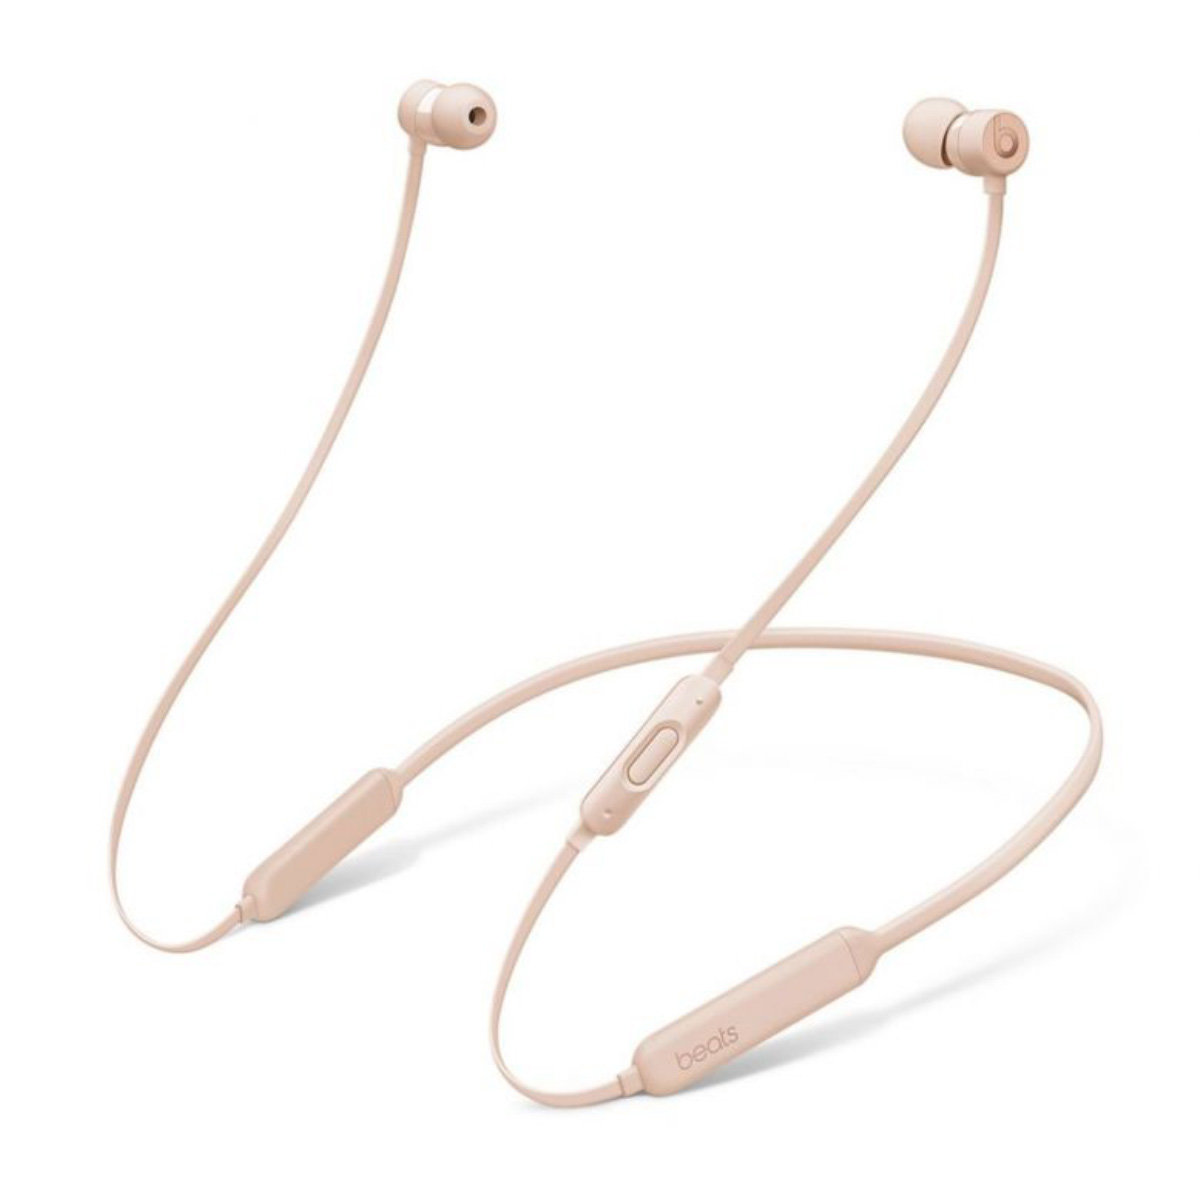 beatsx in ear wireless headphones